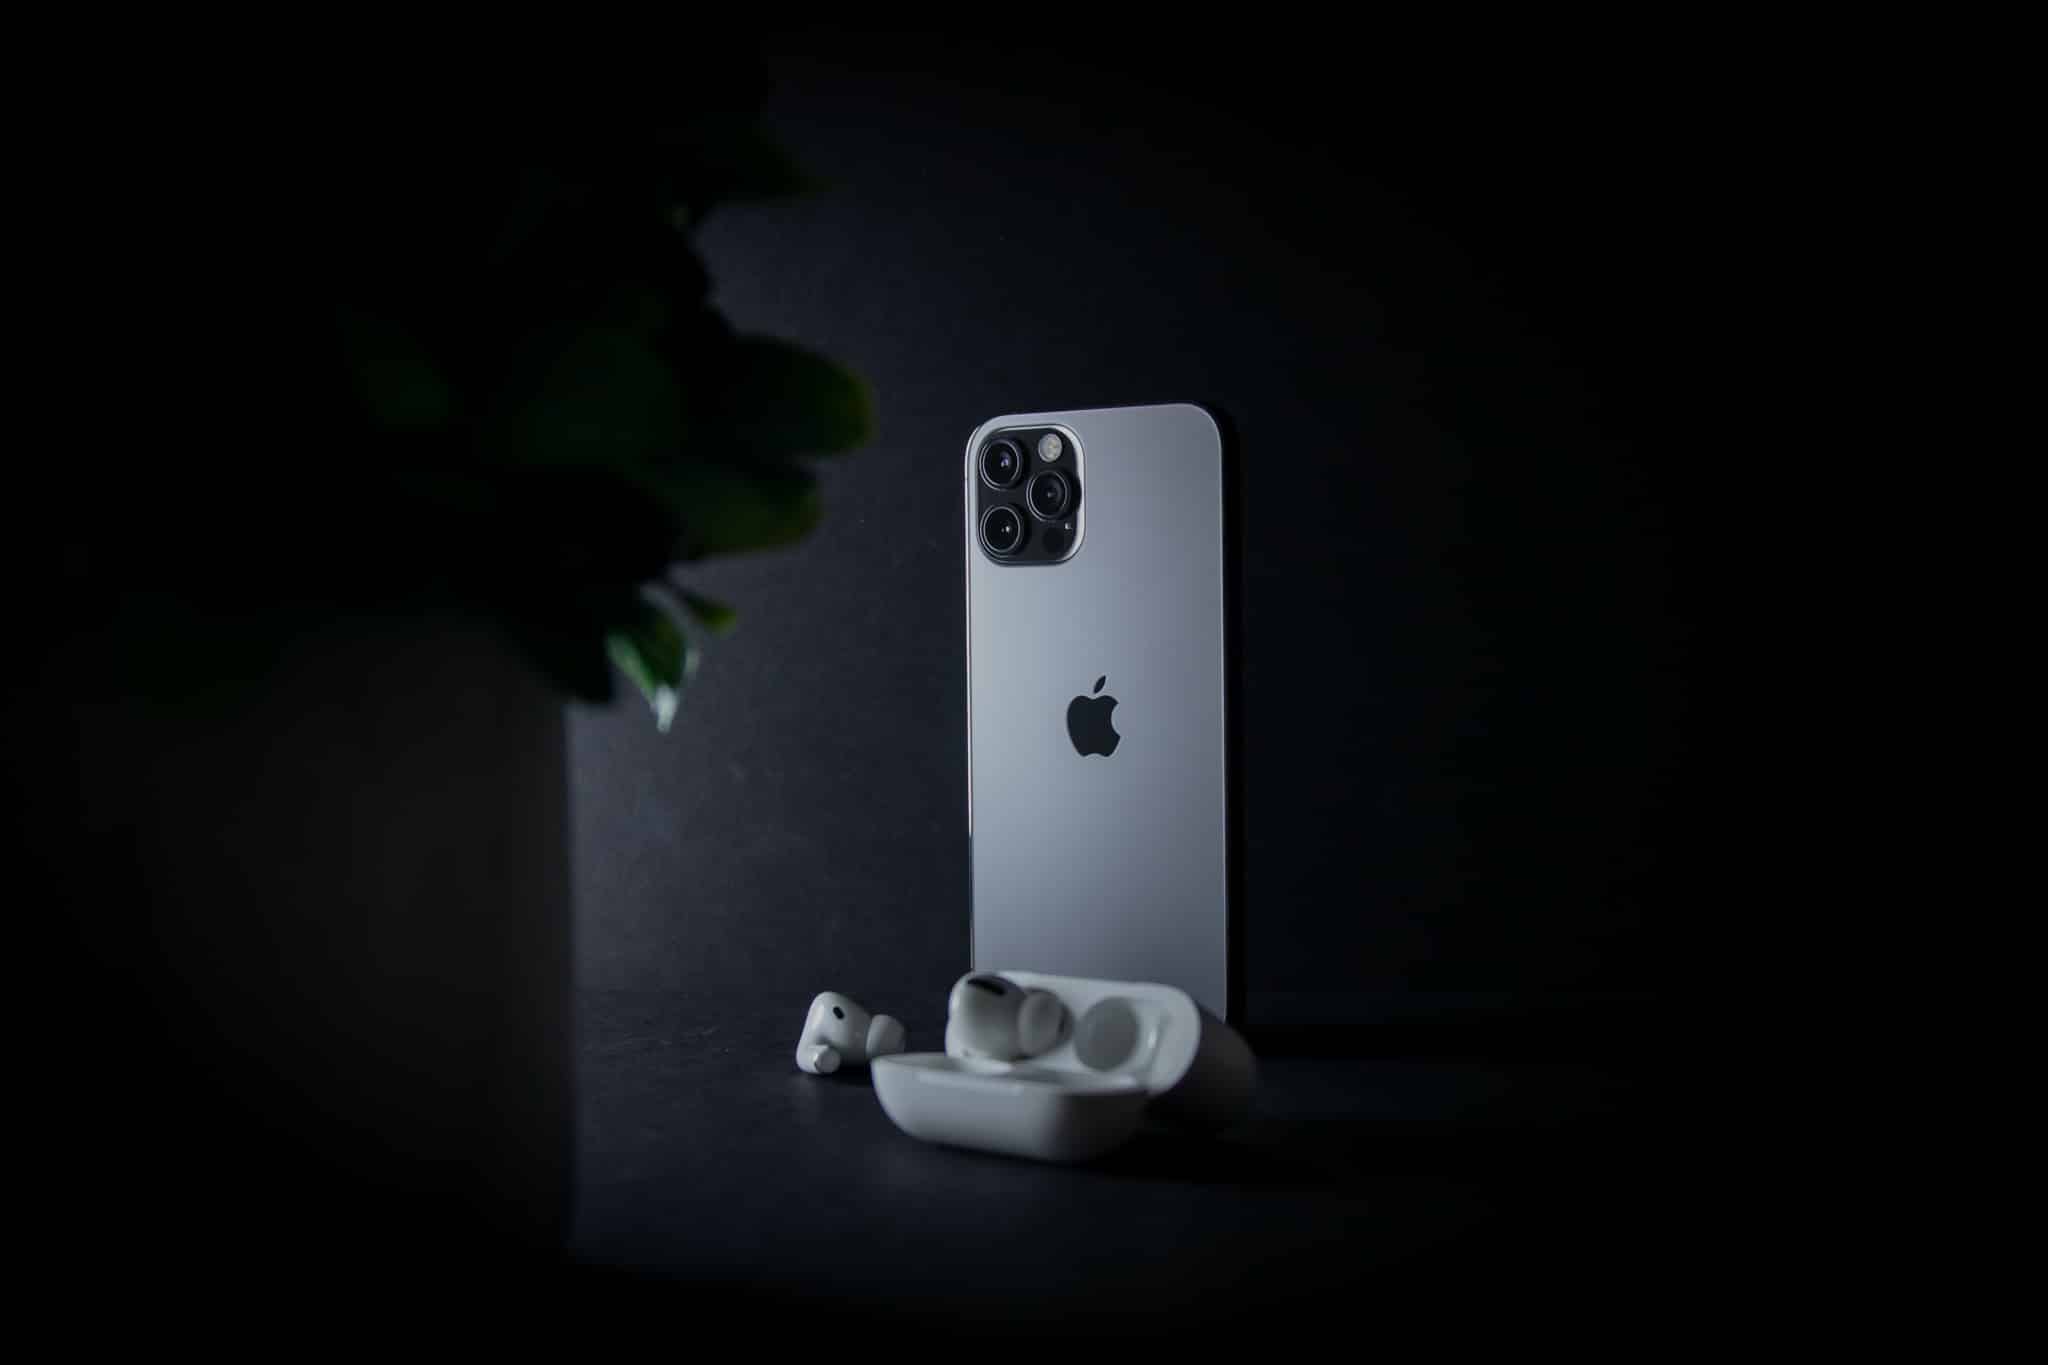 Apple thay đổi và áp dụng chính sách bảo hành mới đối với iPhone 12 tại Việt Nam